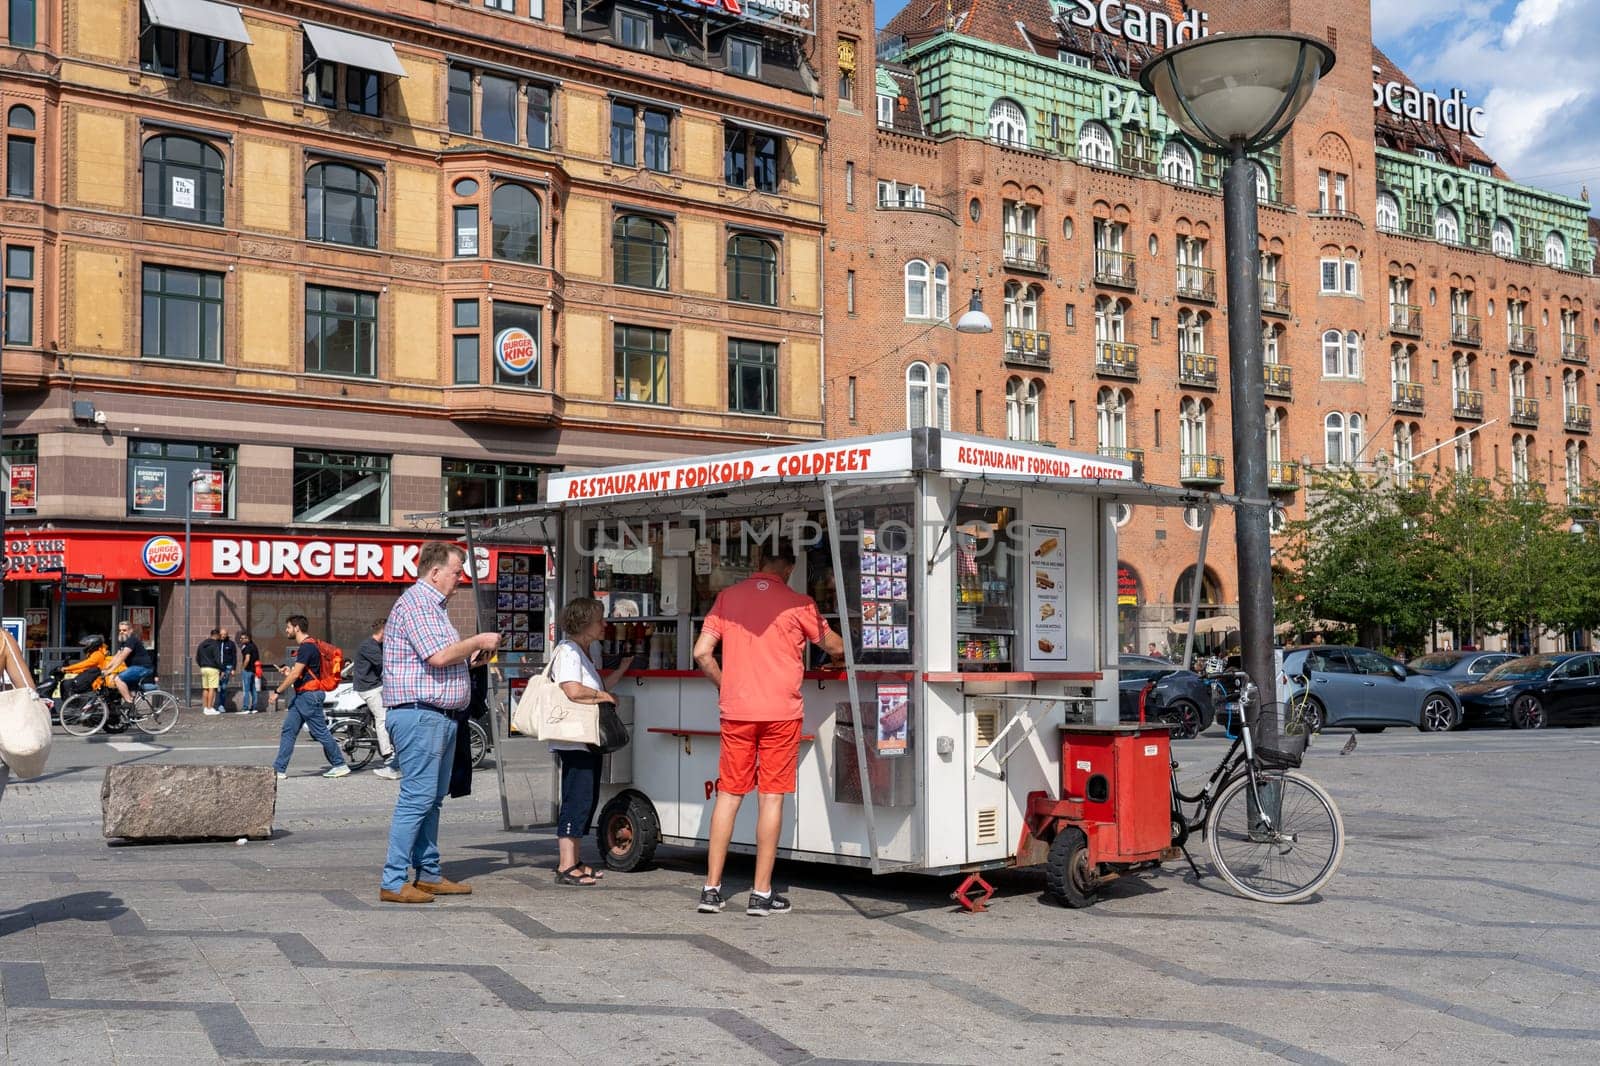 Popular Hot Dog Stall in Copenhagen, Denmark by oliverfoerstner